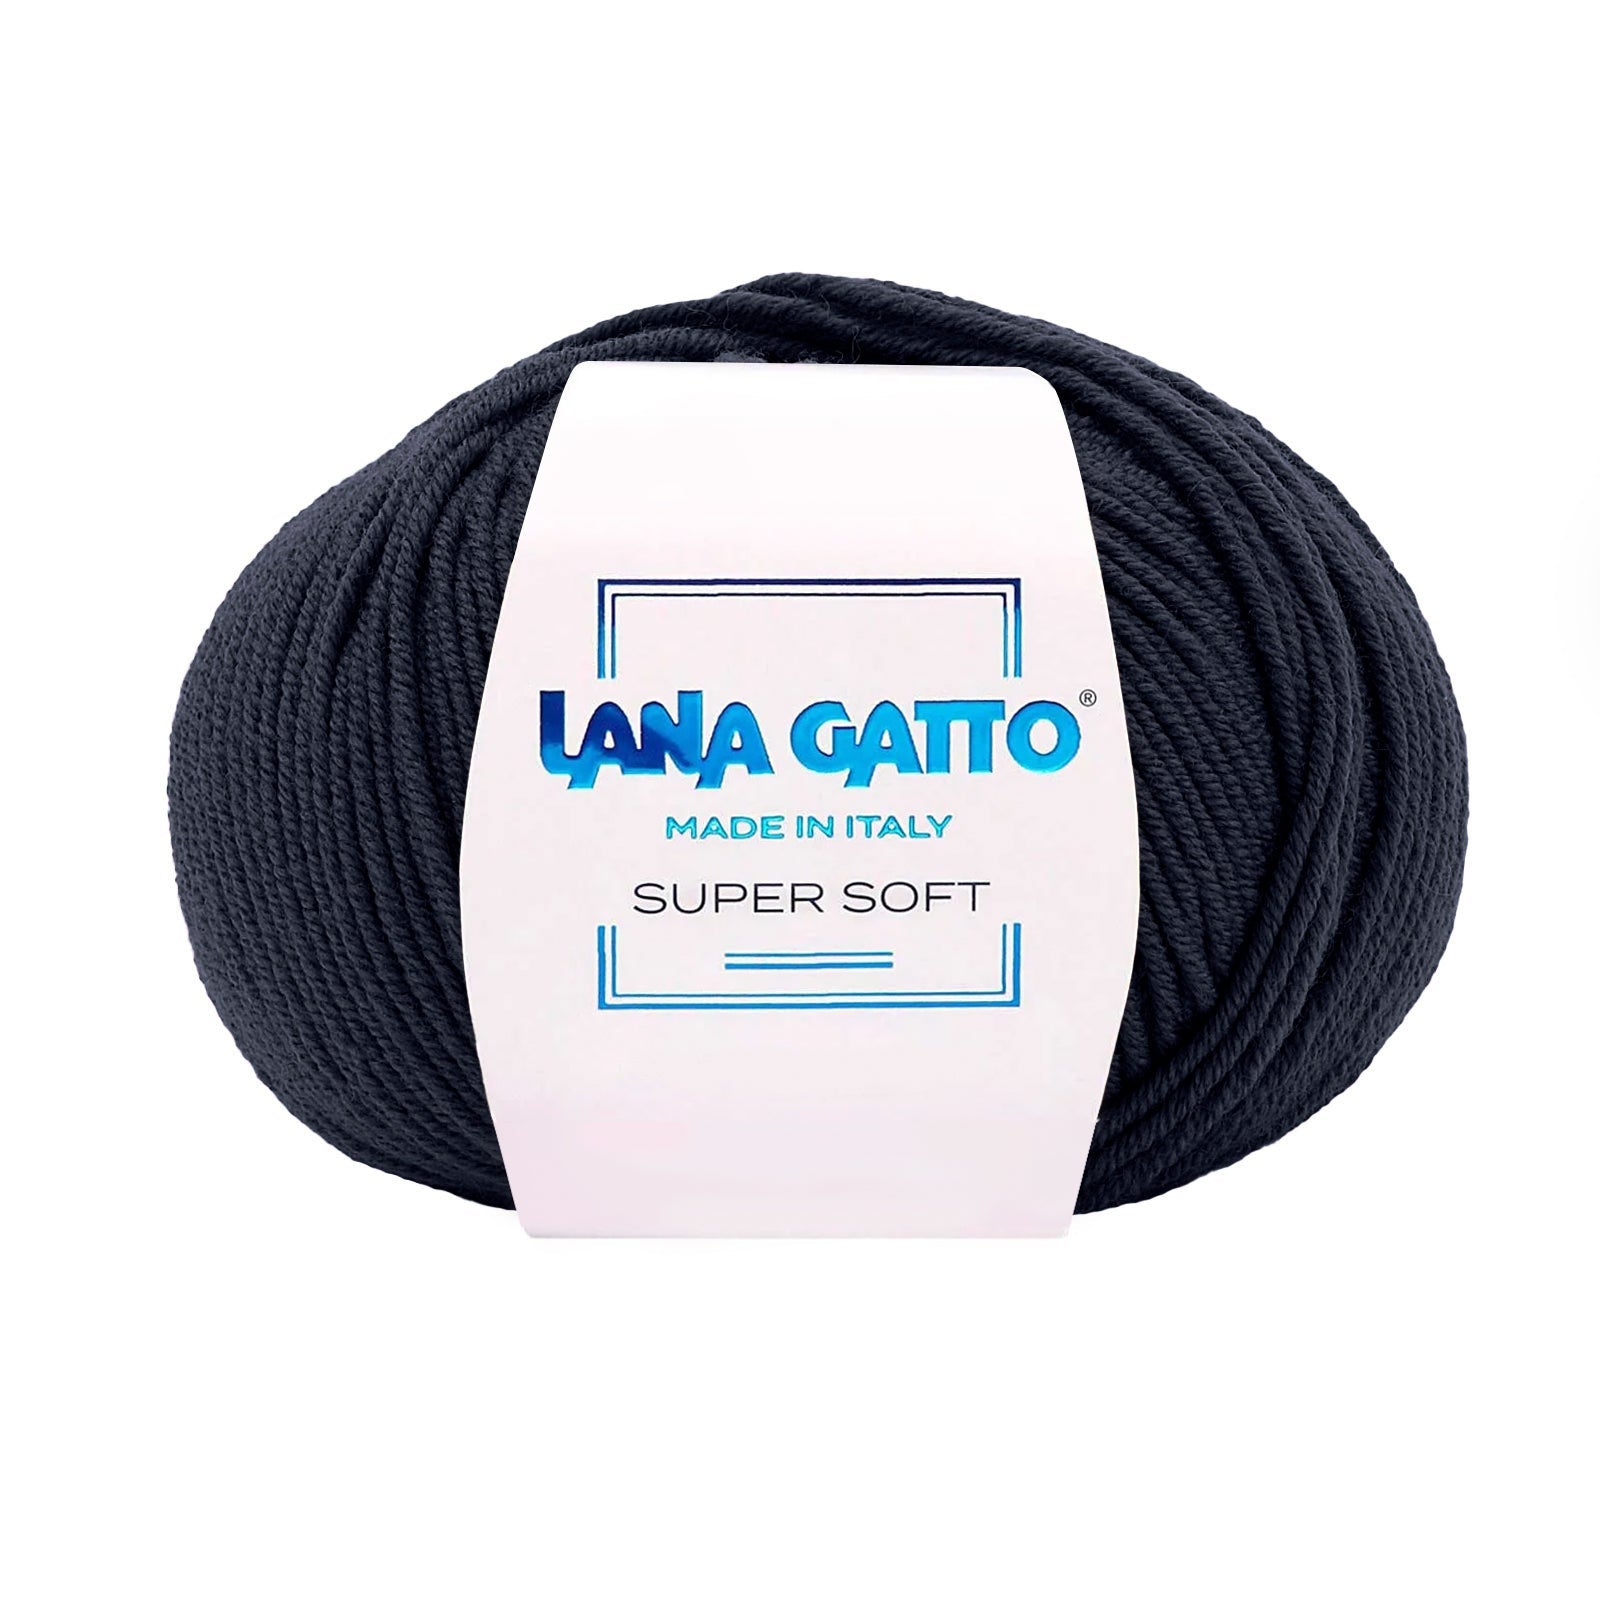 Gomitolo 100% Pura Lana Vergine Merino Extrafine Lana Gatto Linea Super Soft - Tonalità Blu - Blu - 10214 - Gomitolo